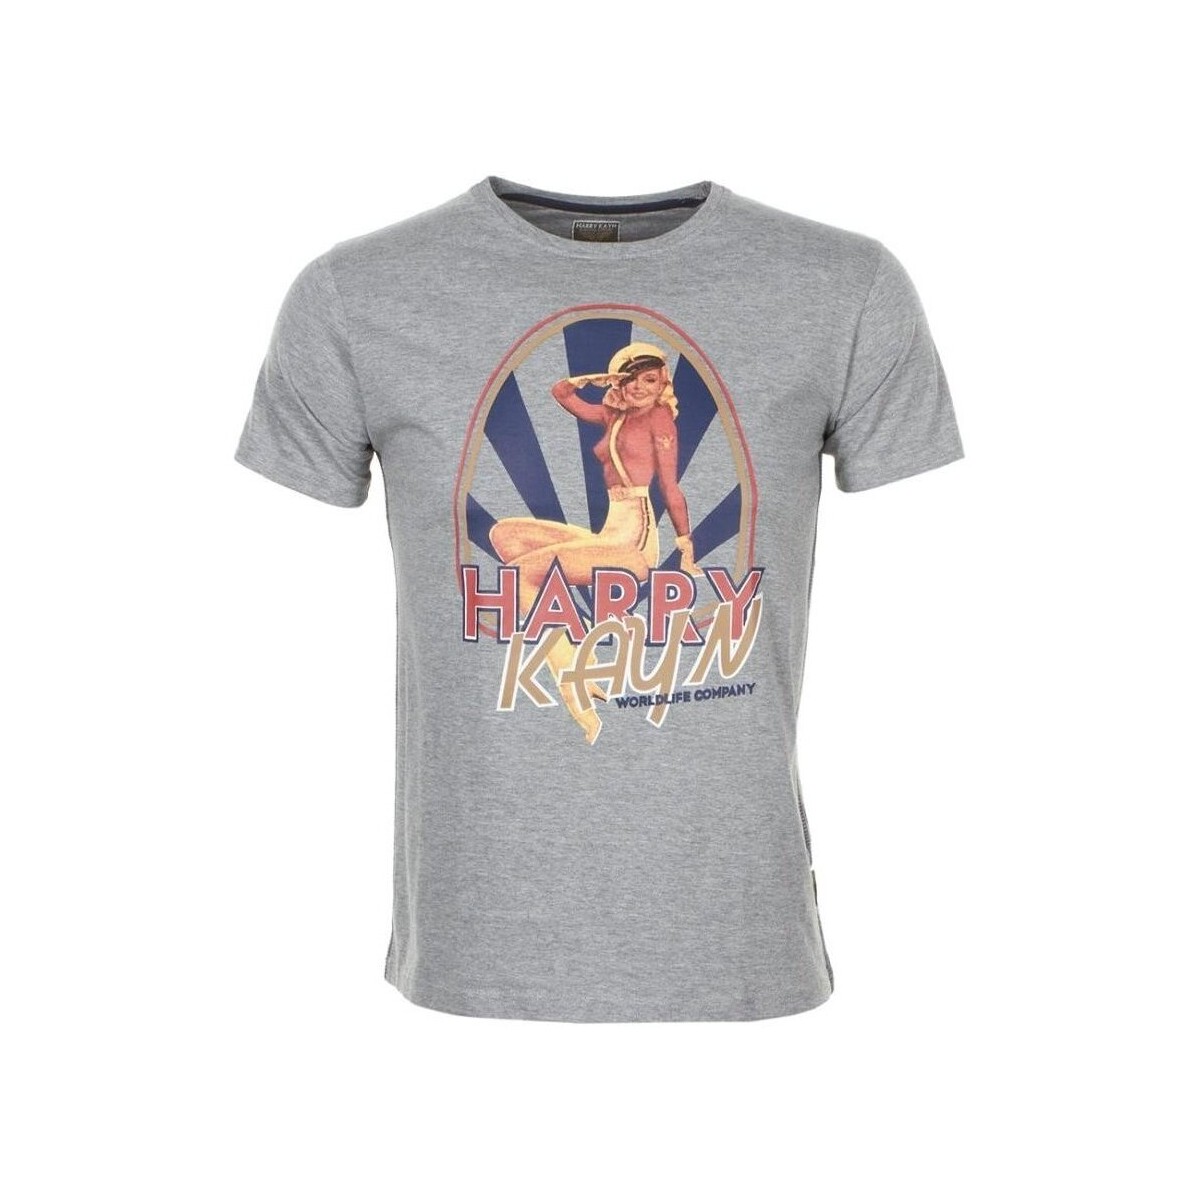 Kleidung Jungen T-Shirts Harry Kayn T-shirt manches courtes garçon ECELINUP Grau